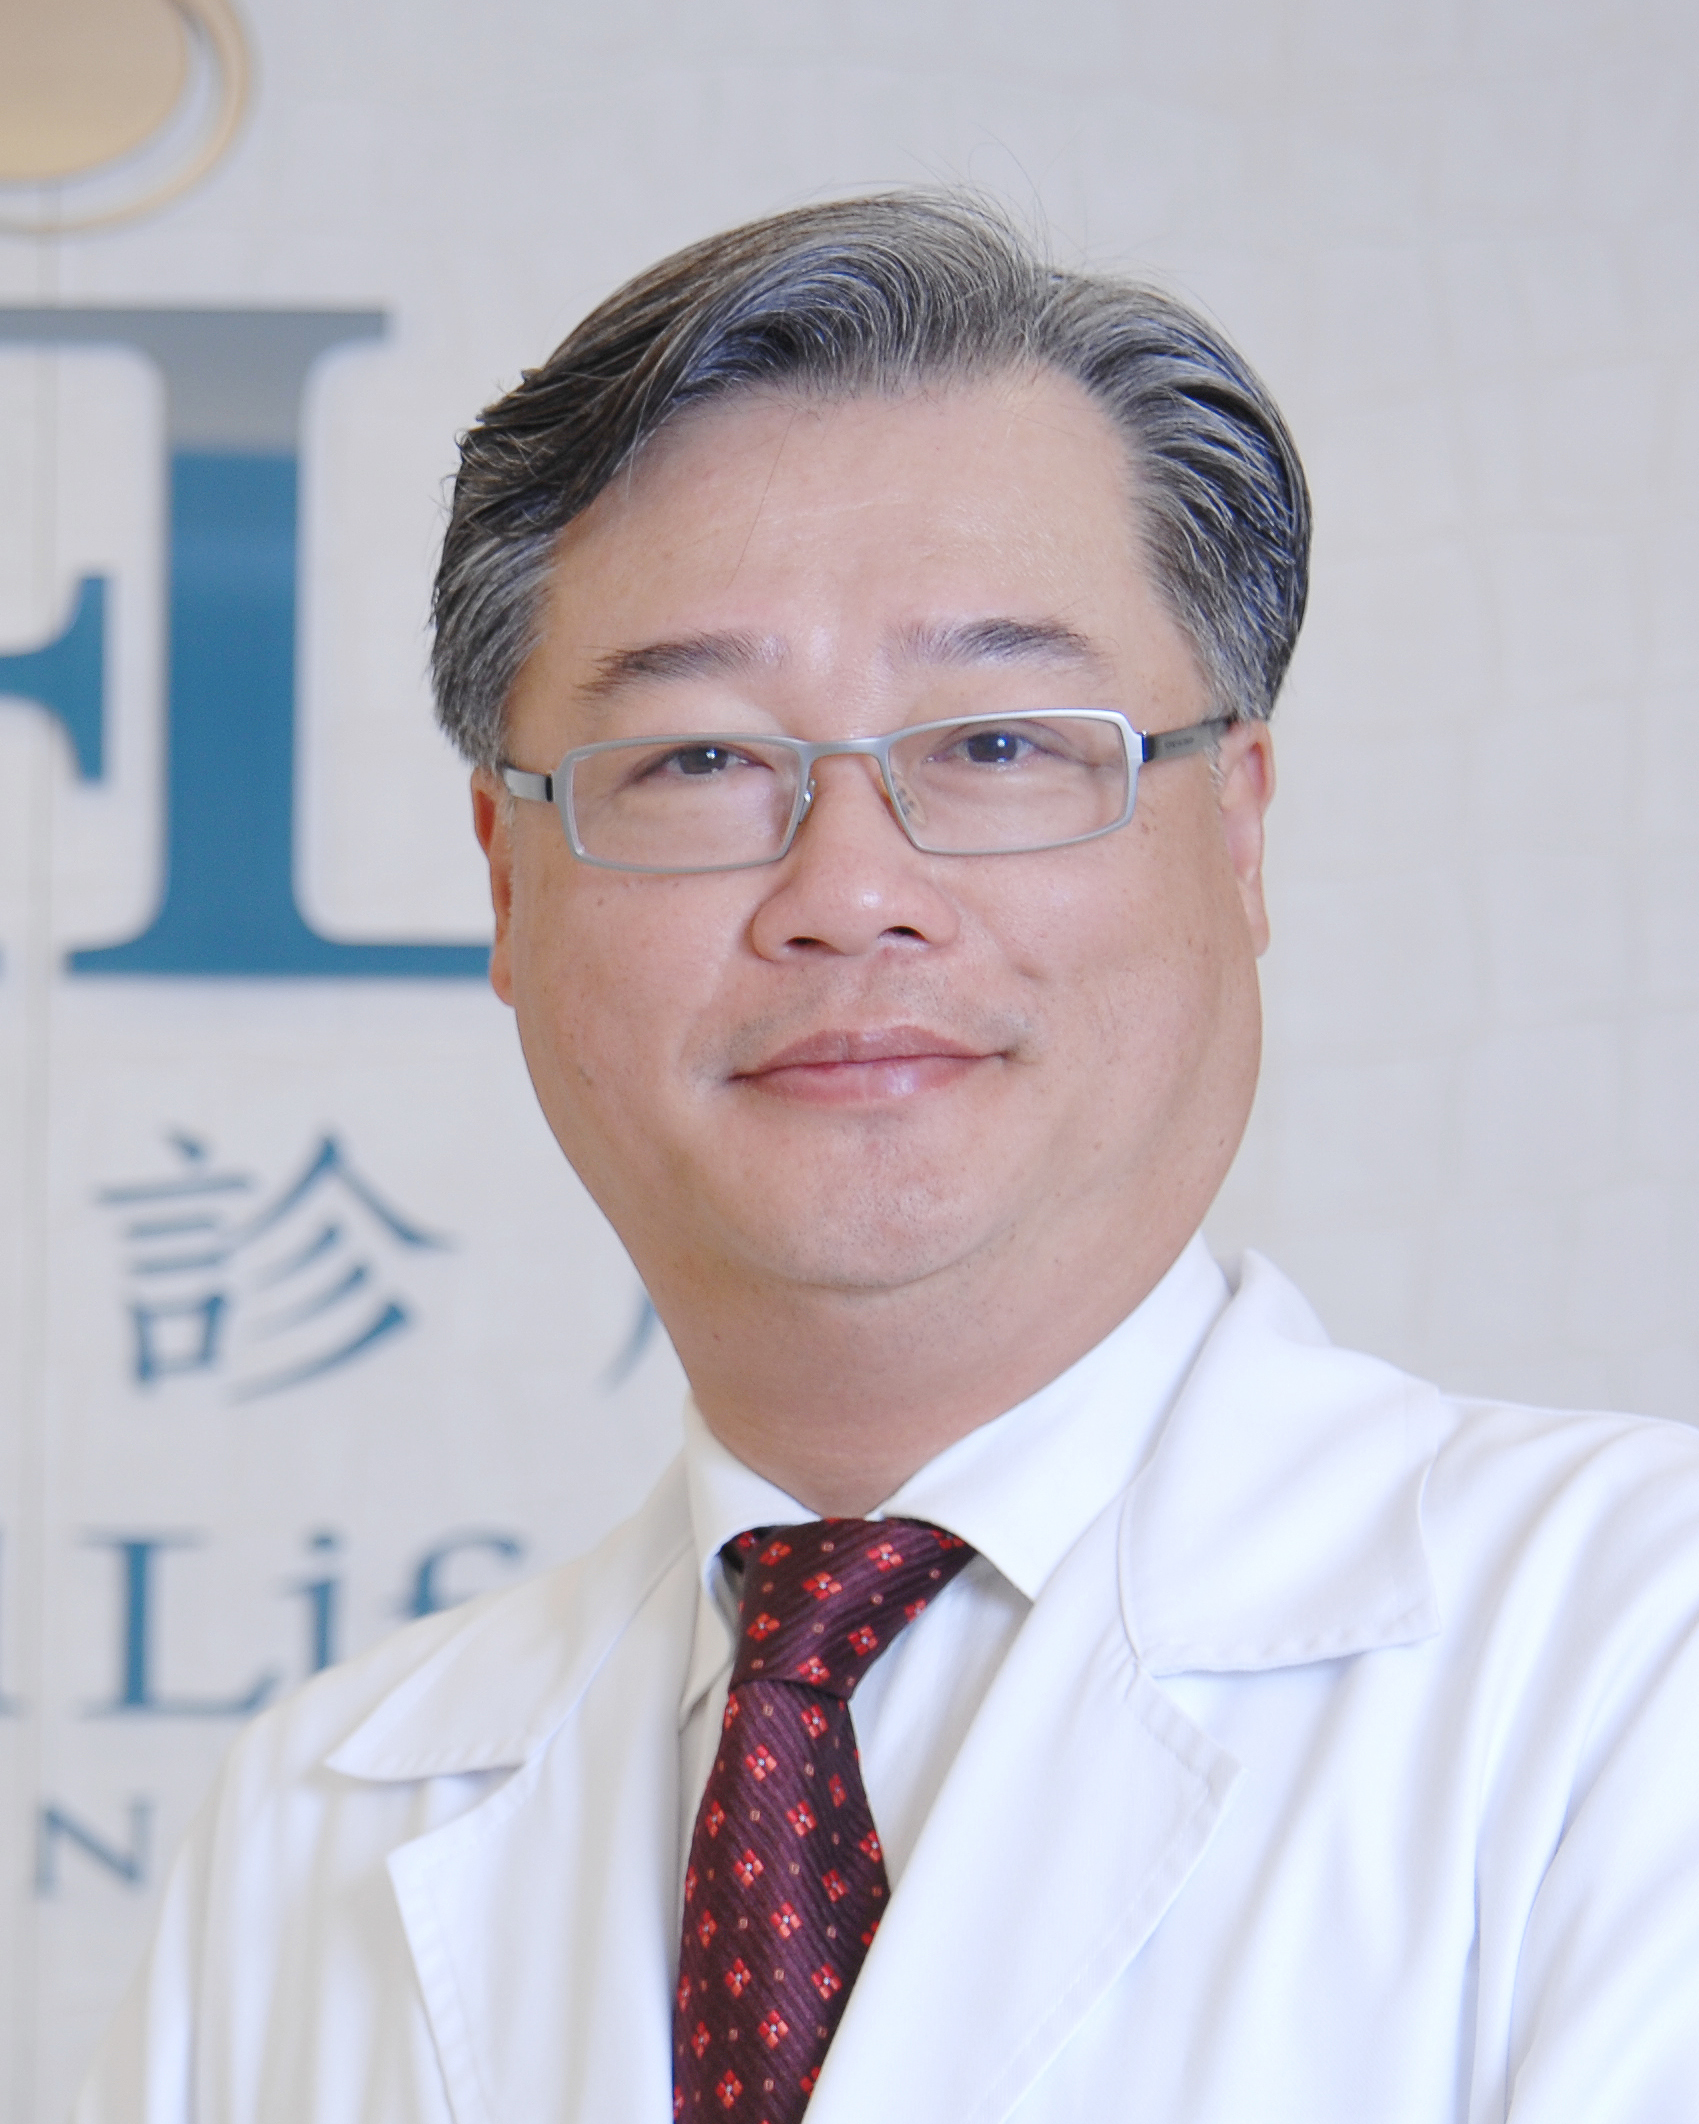 朱恆毅-穎奕生醫科技股份有限公司總經理、積極擴大幹細胞的臨床應用